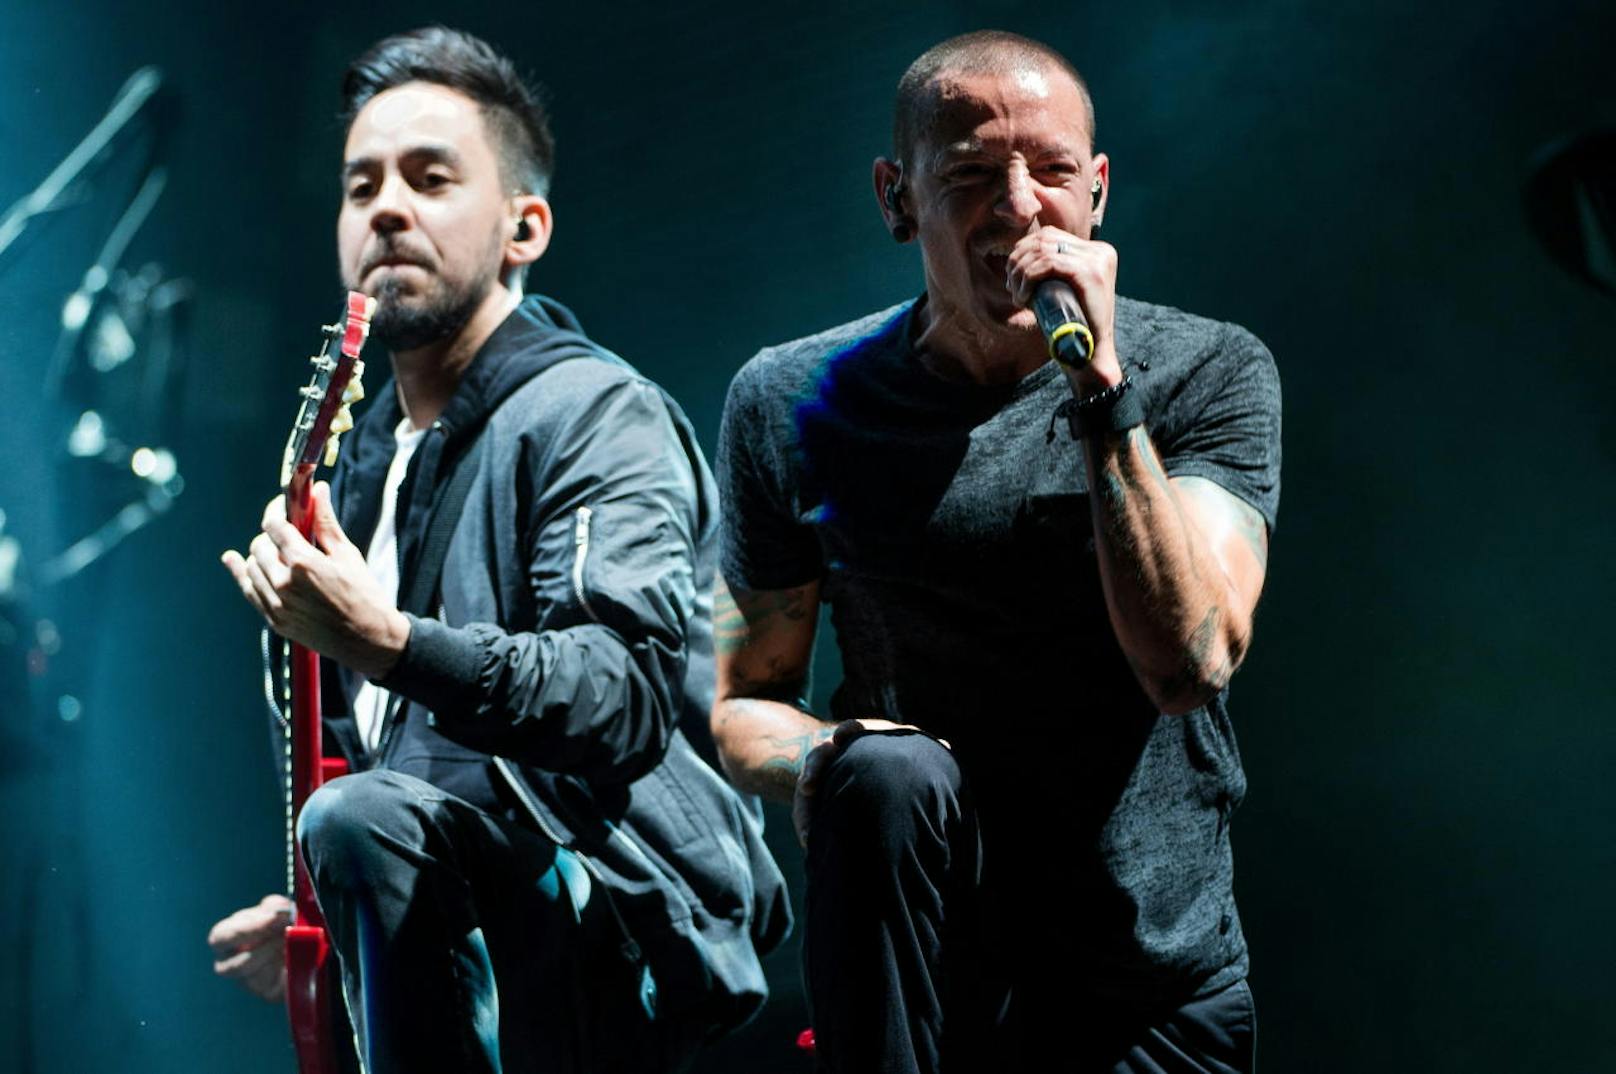 Linkin Park treten am 14. Juni 16 als Headline-Act beim Nova Rock-Festival auf: Jetzt mitmachen & 5 x 2 Karten für das legendäre Event gewinnen!